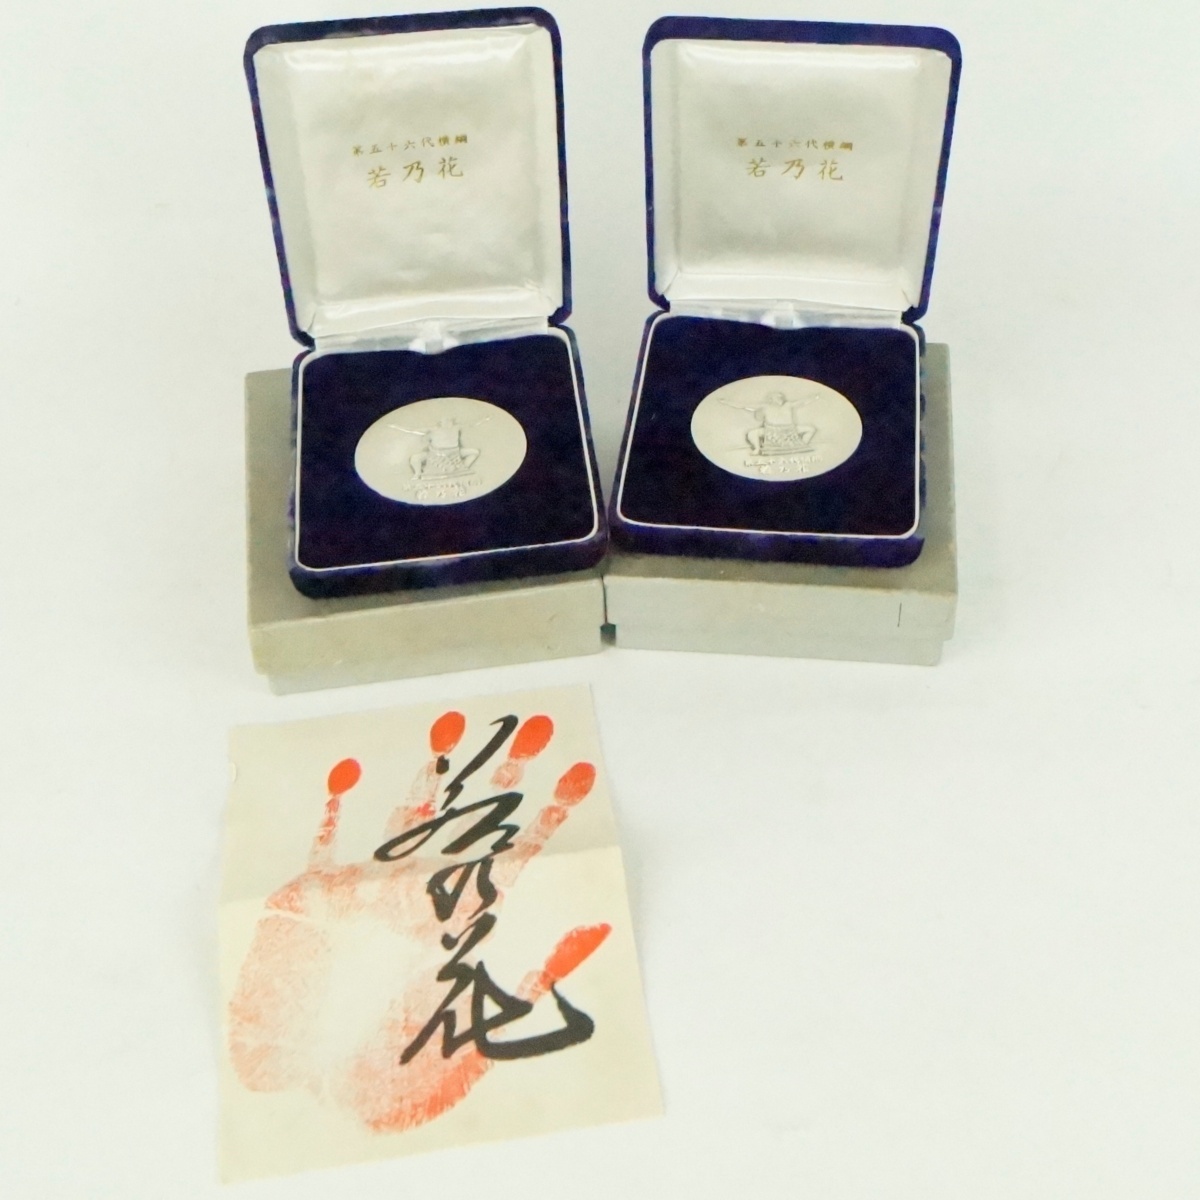 中古 レア 第56代 横関 若乃花 純銀メダル 昭和53年 約60g×2枚セット 片方略歴付